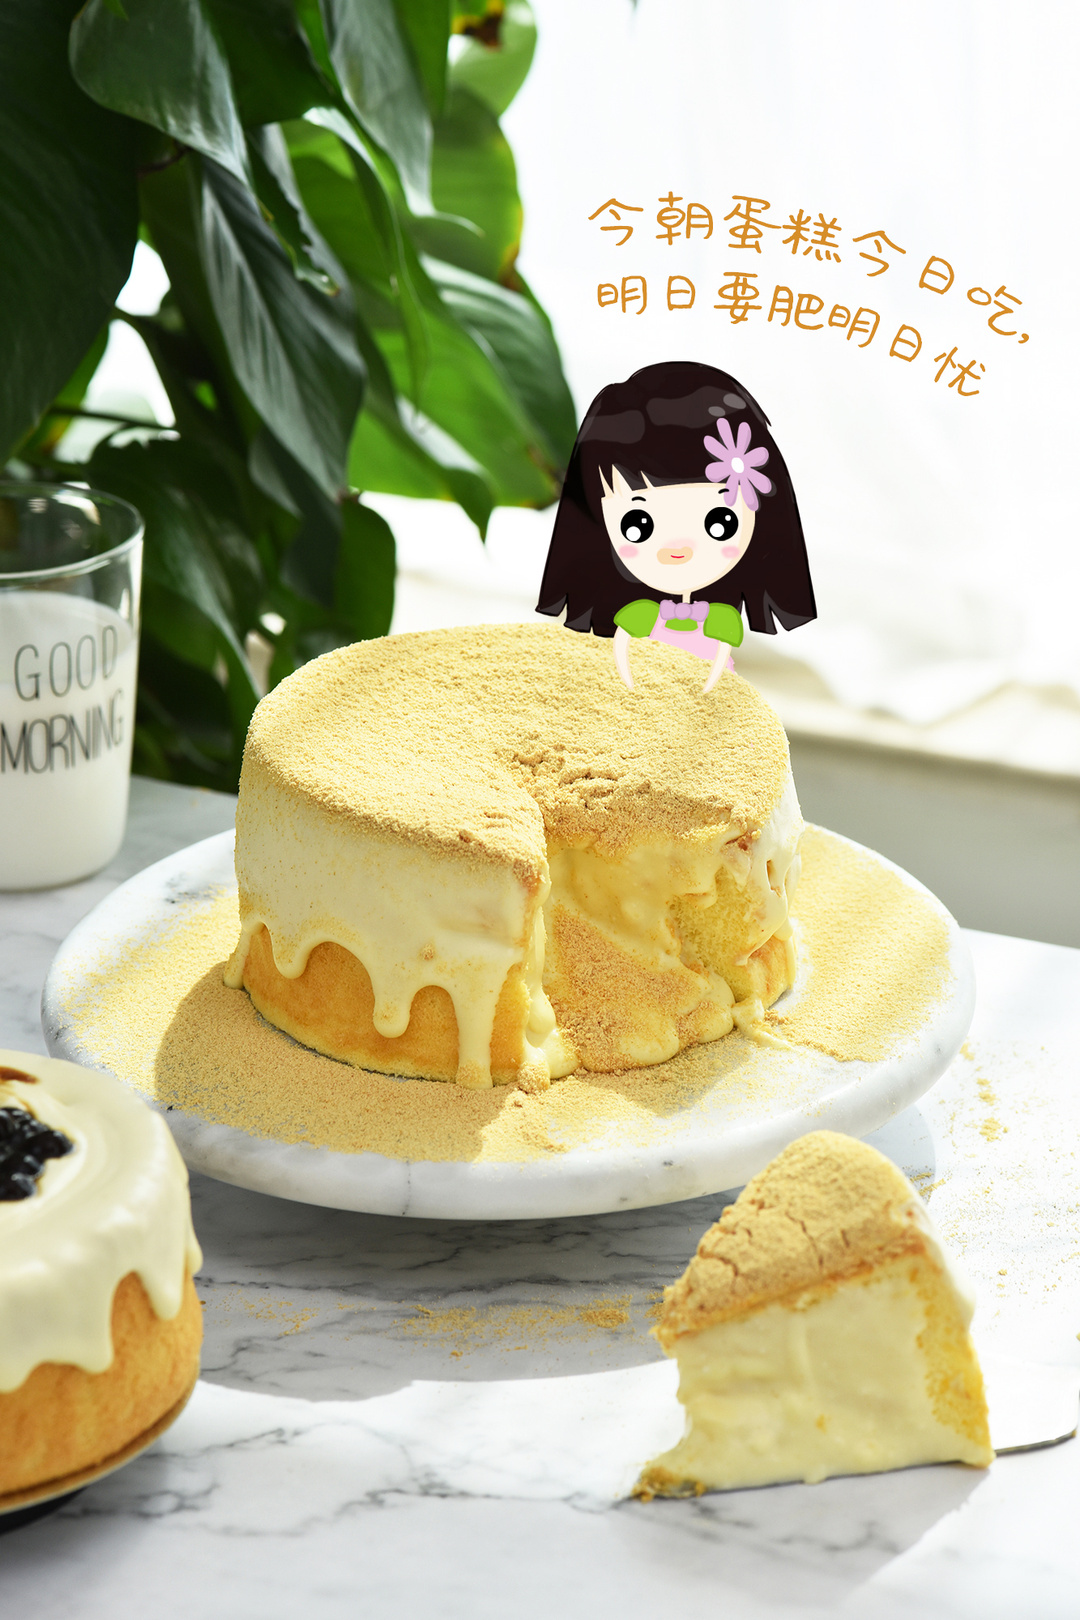 豆乳水果蛋糕怎么做_豆乳水果蛋糕的做法_刘大花_豆果美食